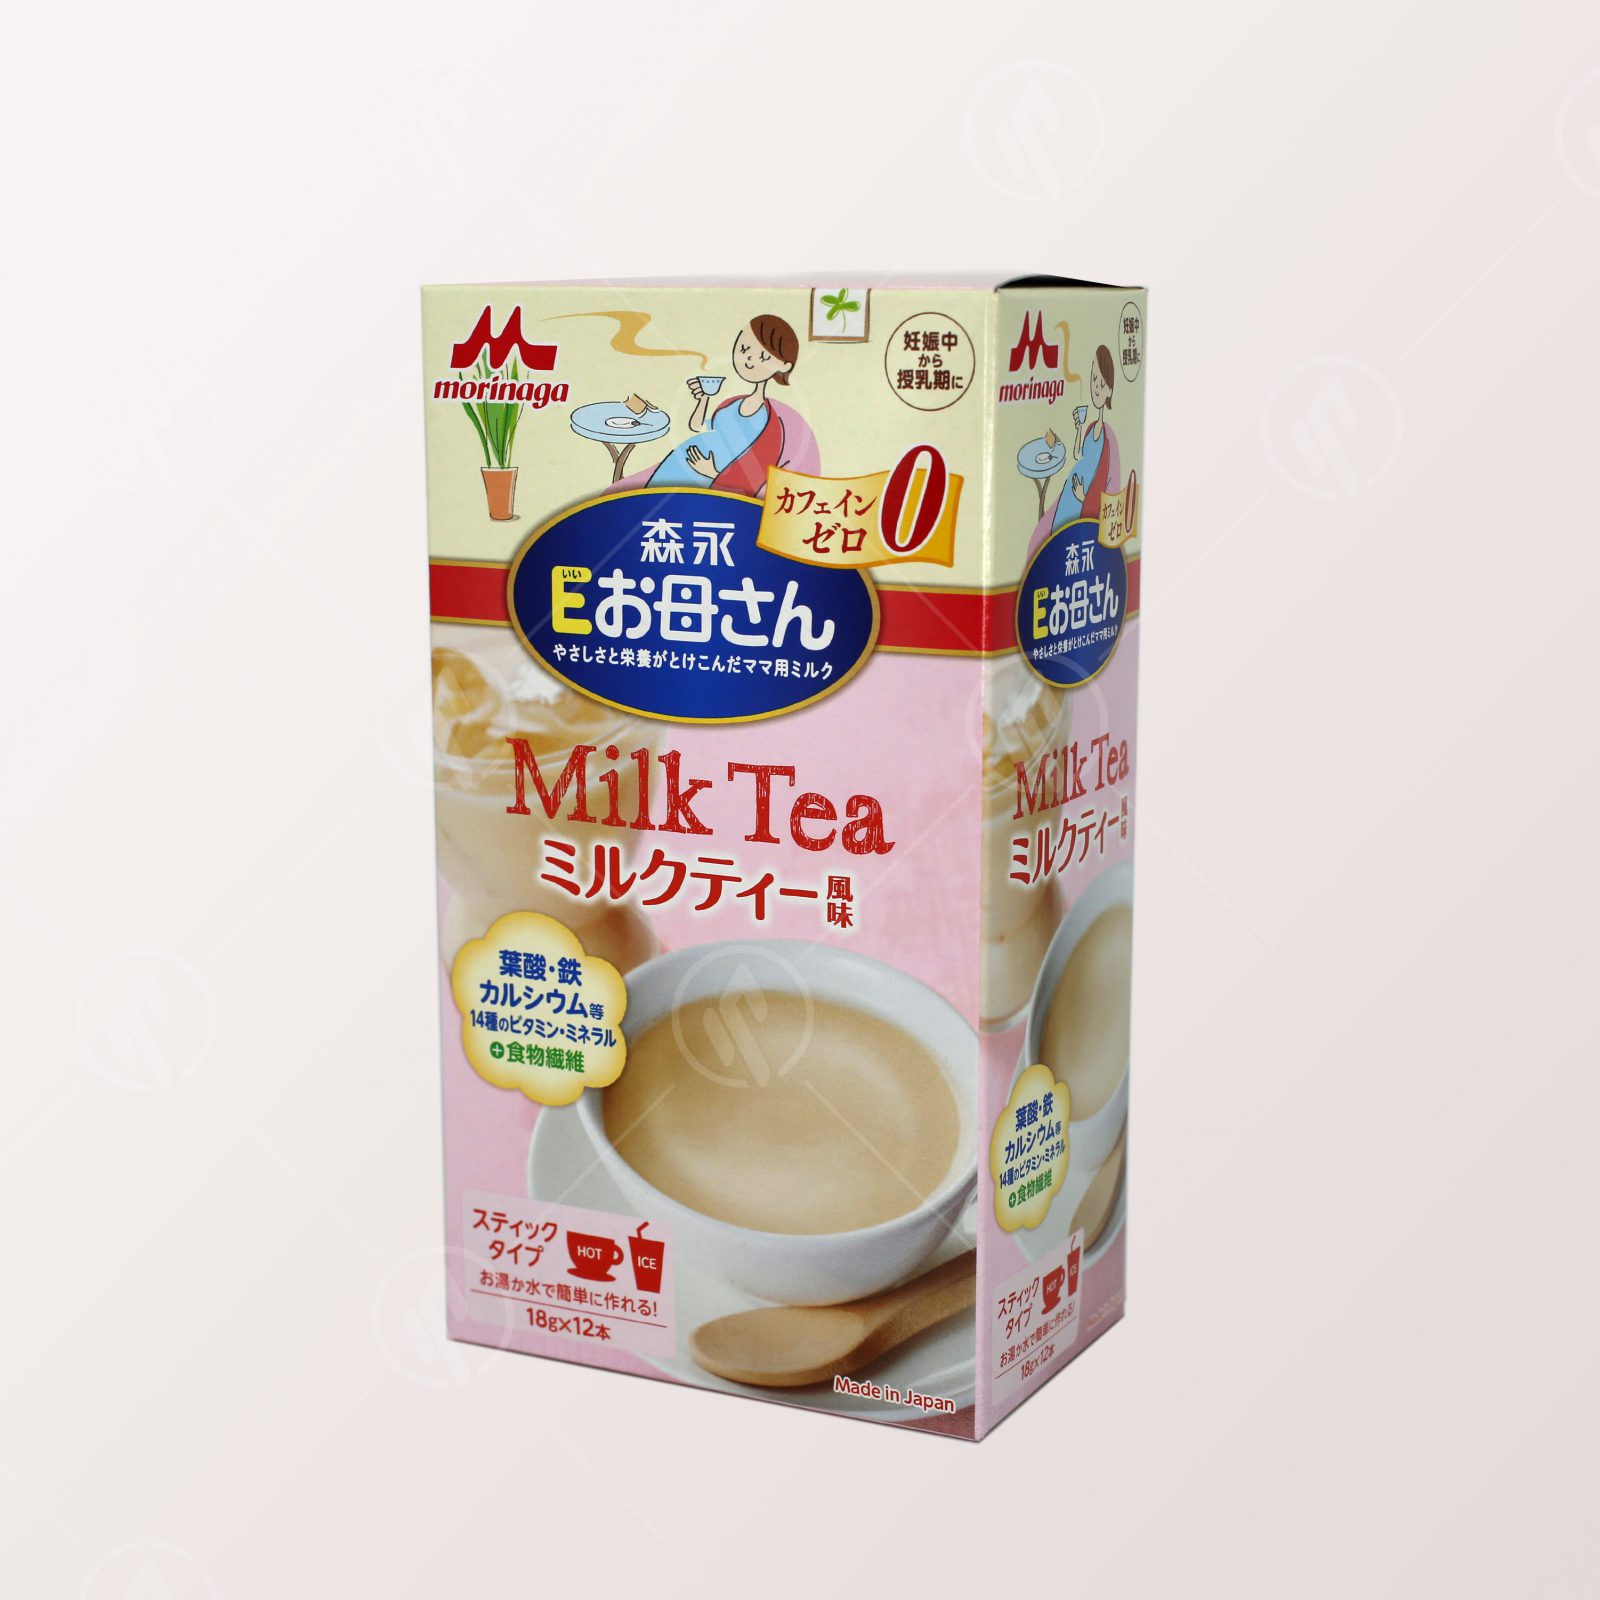 Morinaga E-Okasan Milk Tea